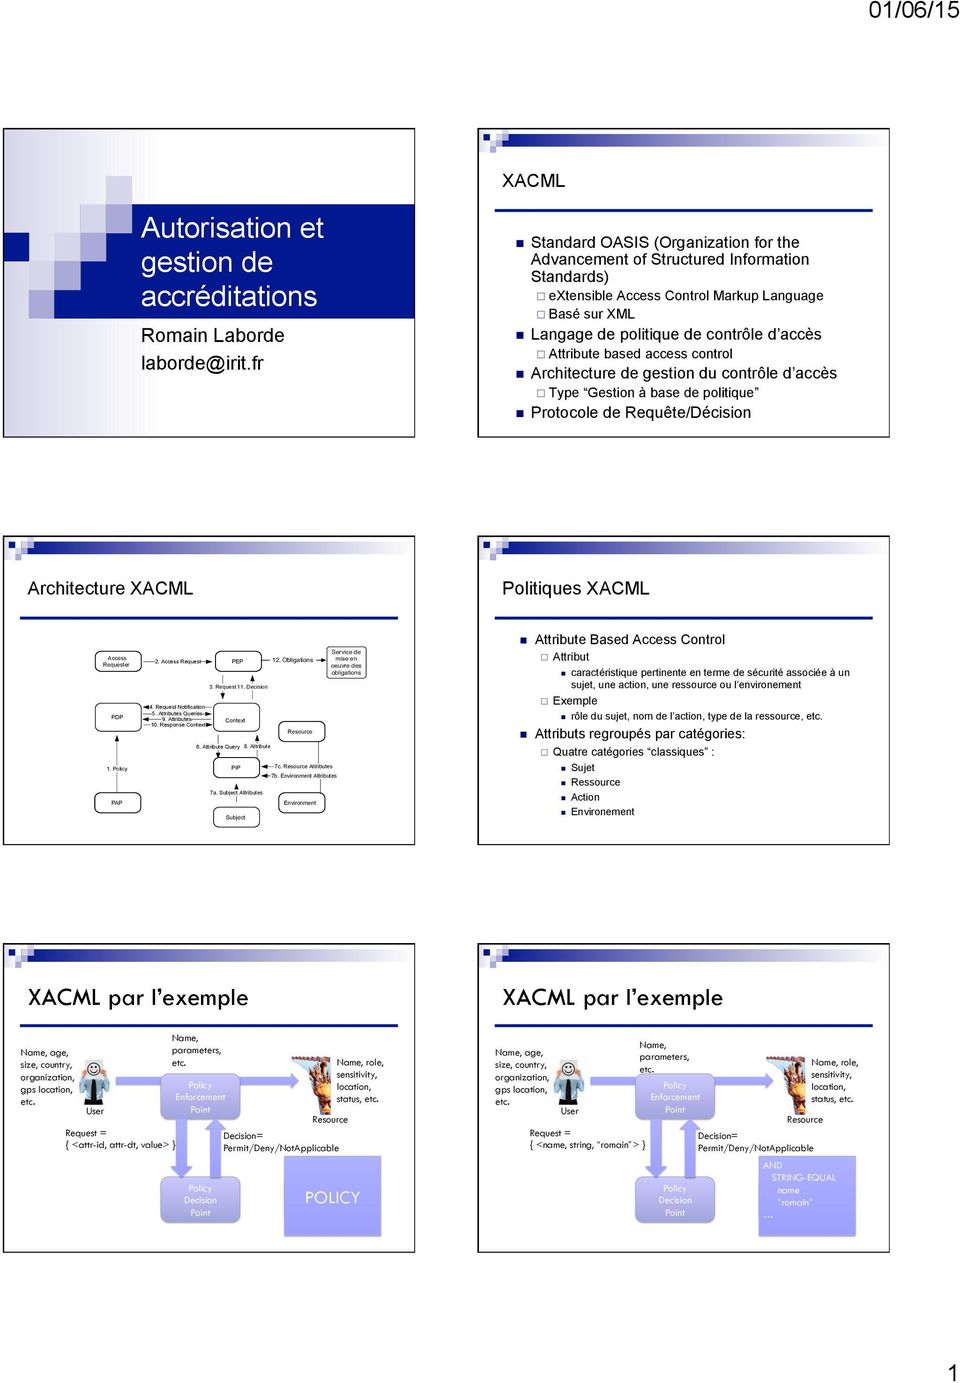 based access control Architecture de gestion du contrôle d accès Type Gestion à base de politique Protocole de Requête/Décision Architecture XACML Politiques XACML Access Requester PDP 1.